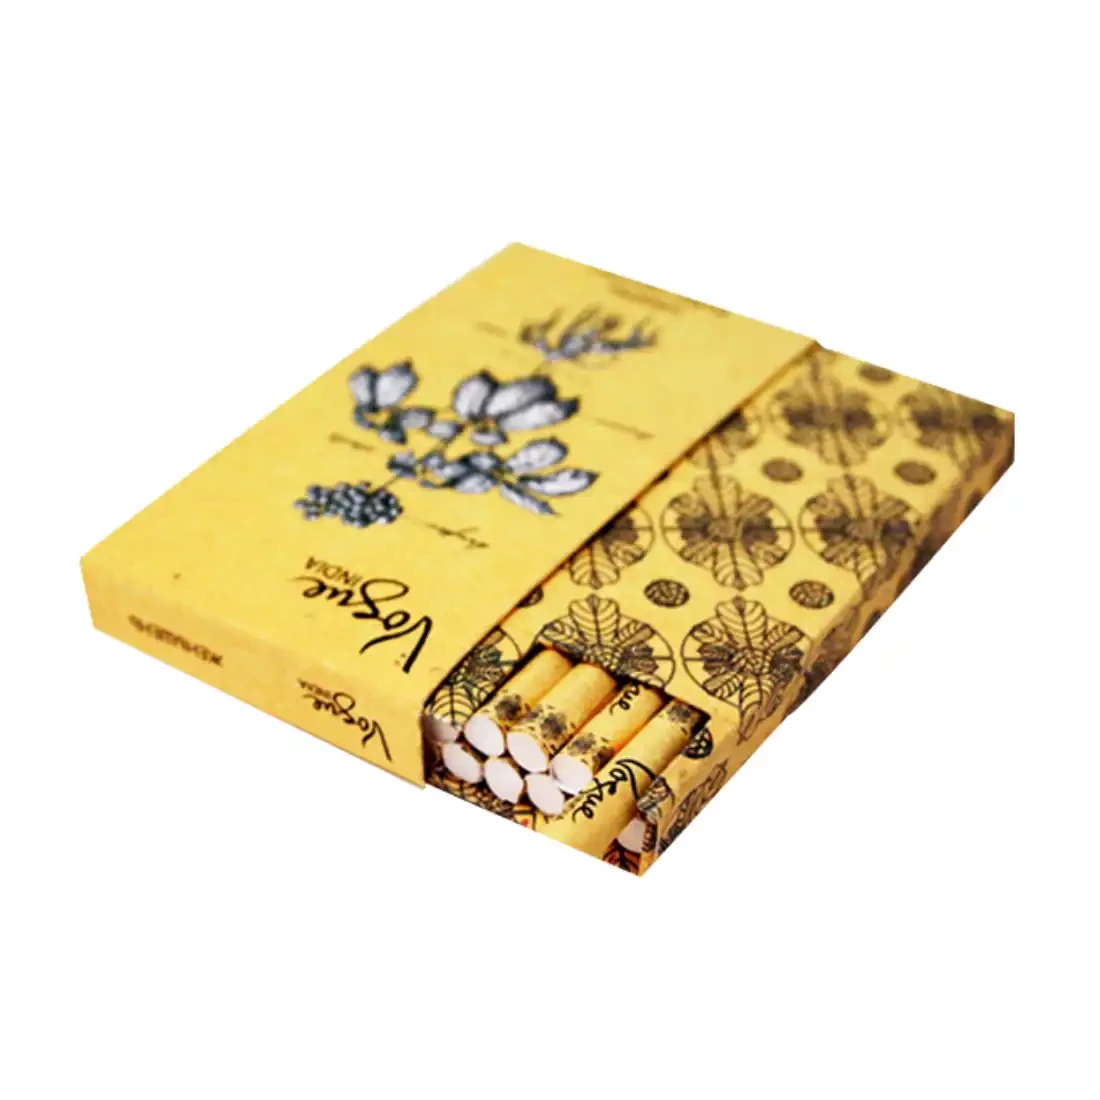 Custom CBD Cigarette Boxes